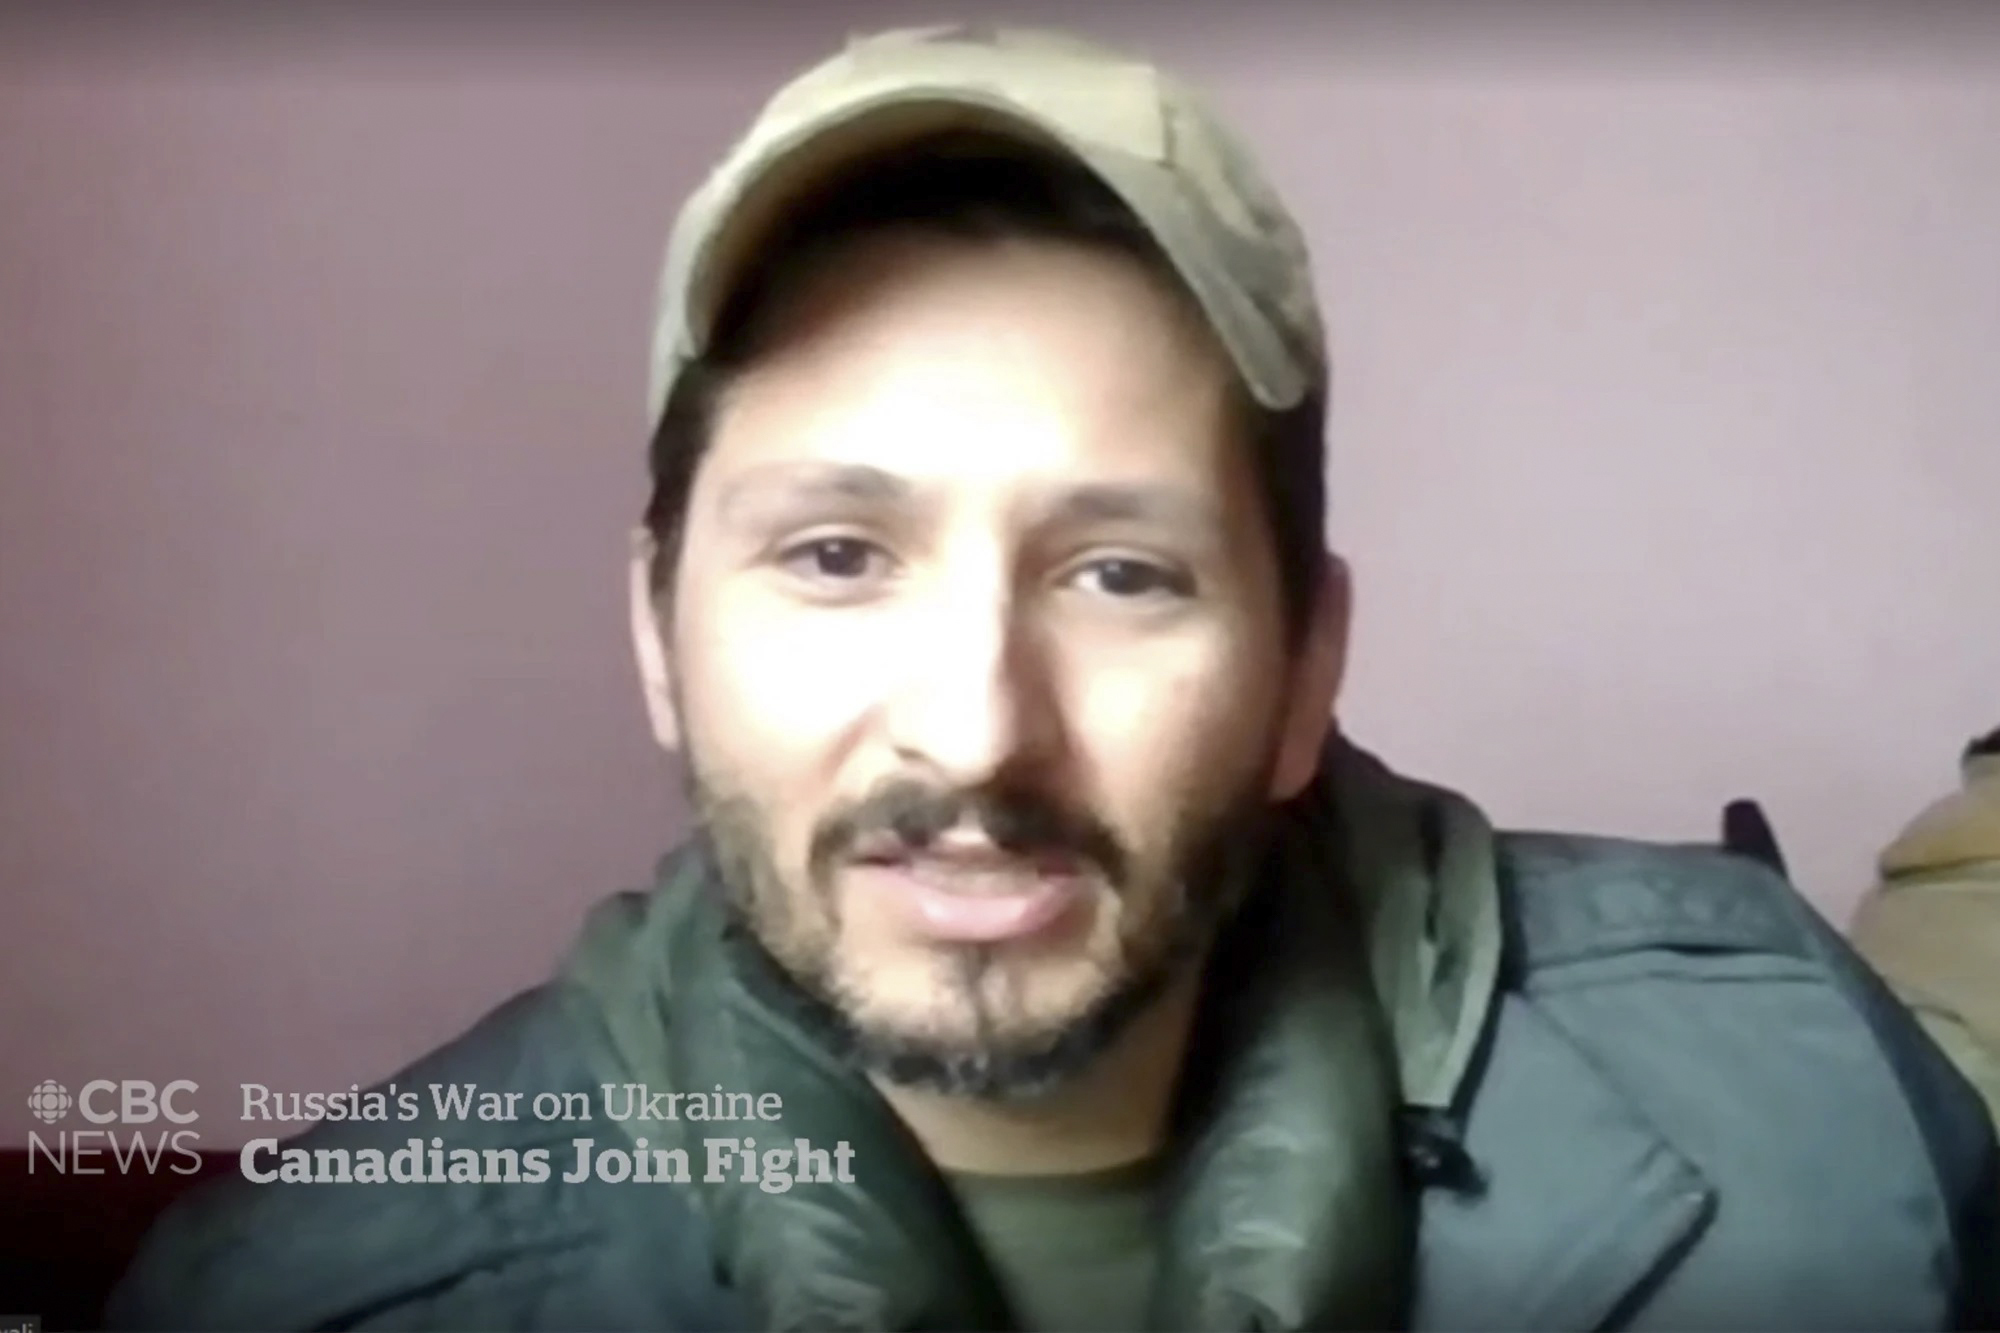 Un francotirador canadiense que luch contra el IS combate contra los rusos en Ucrania